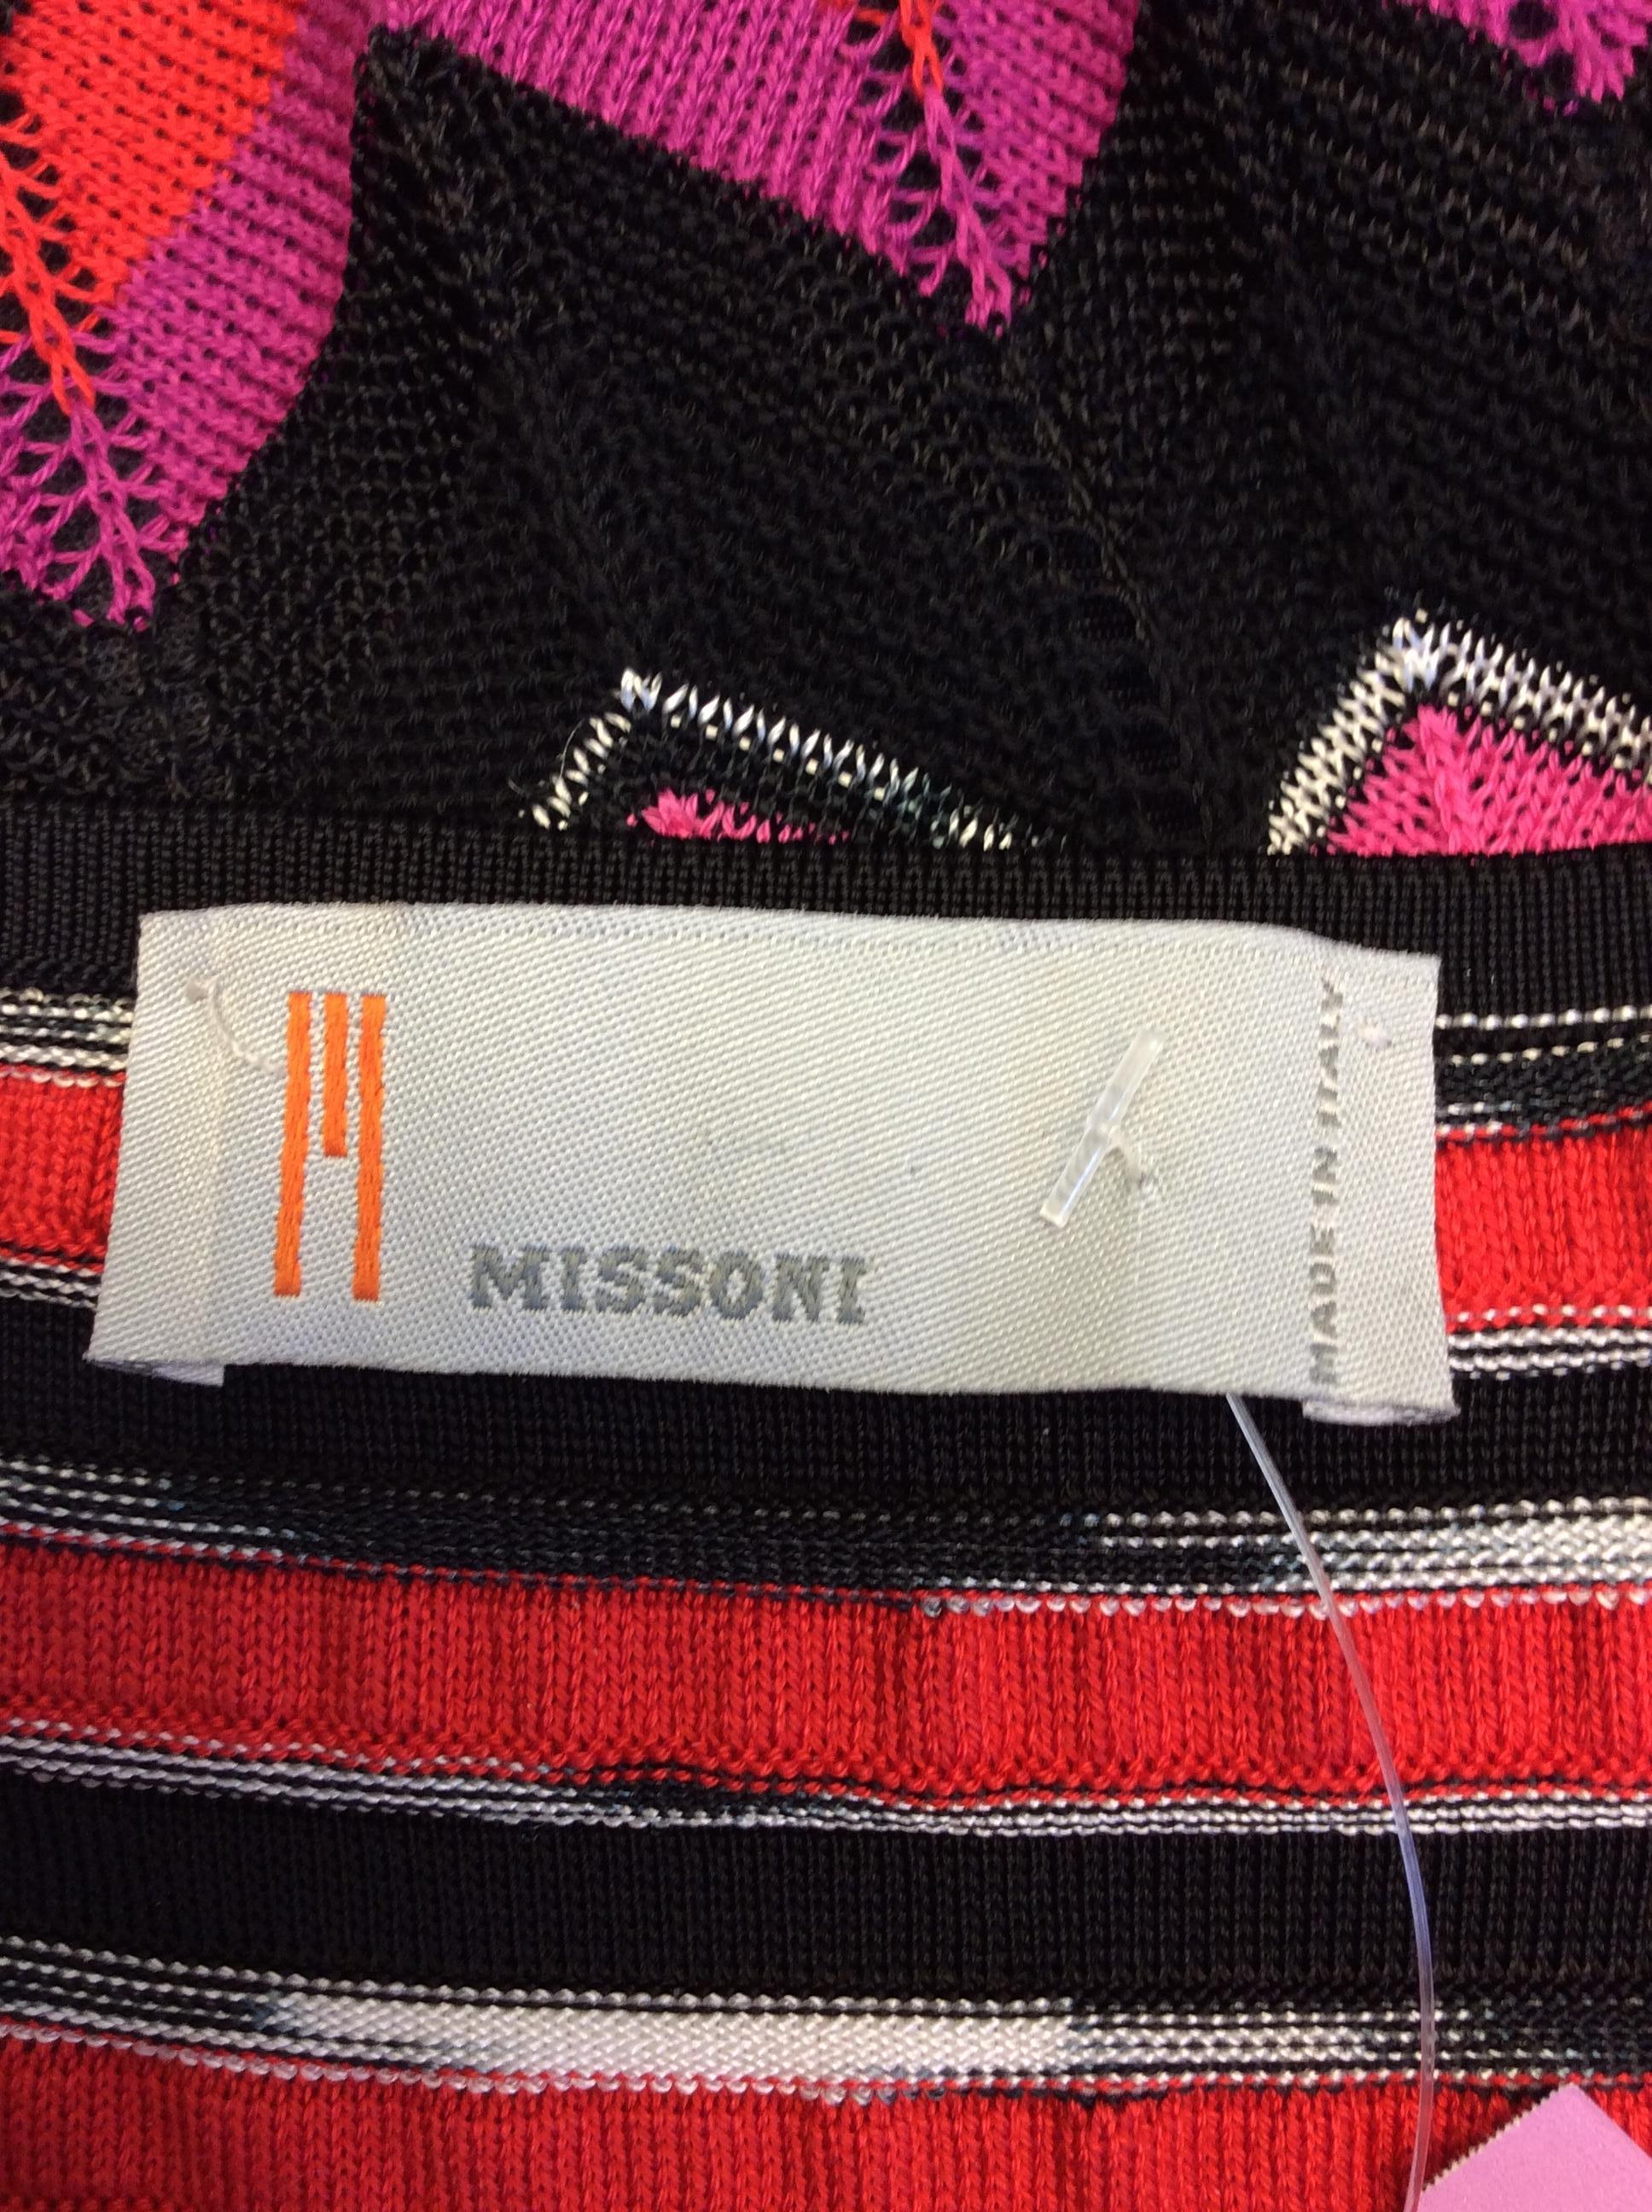 Missoni Multi-Color Striped Strapless Dress For Sale 2